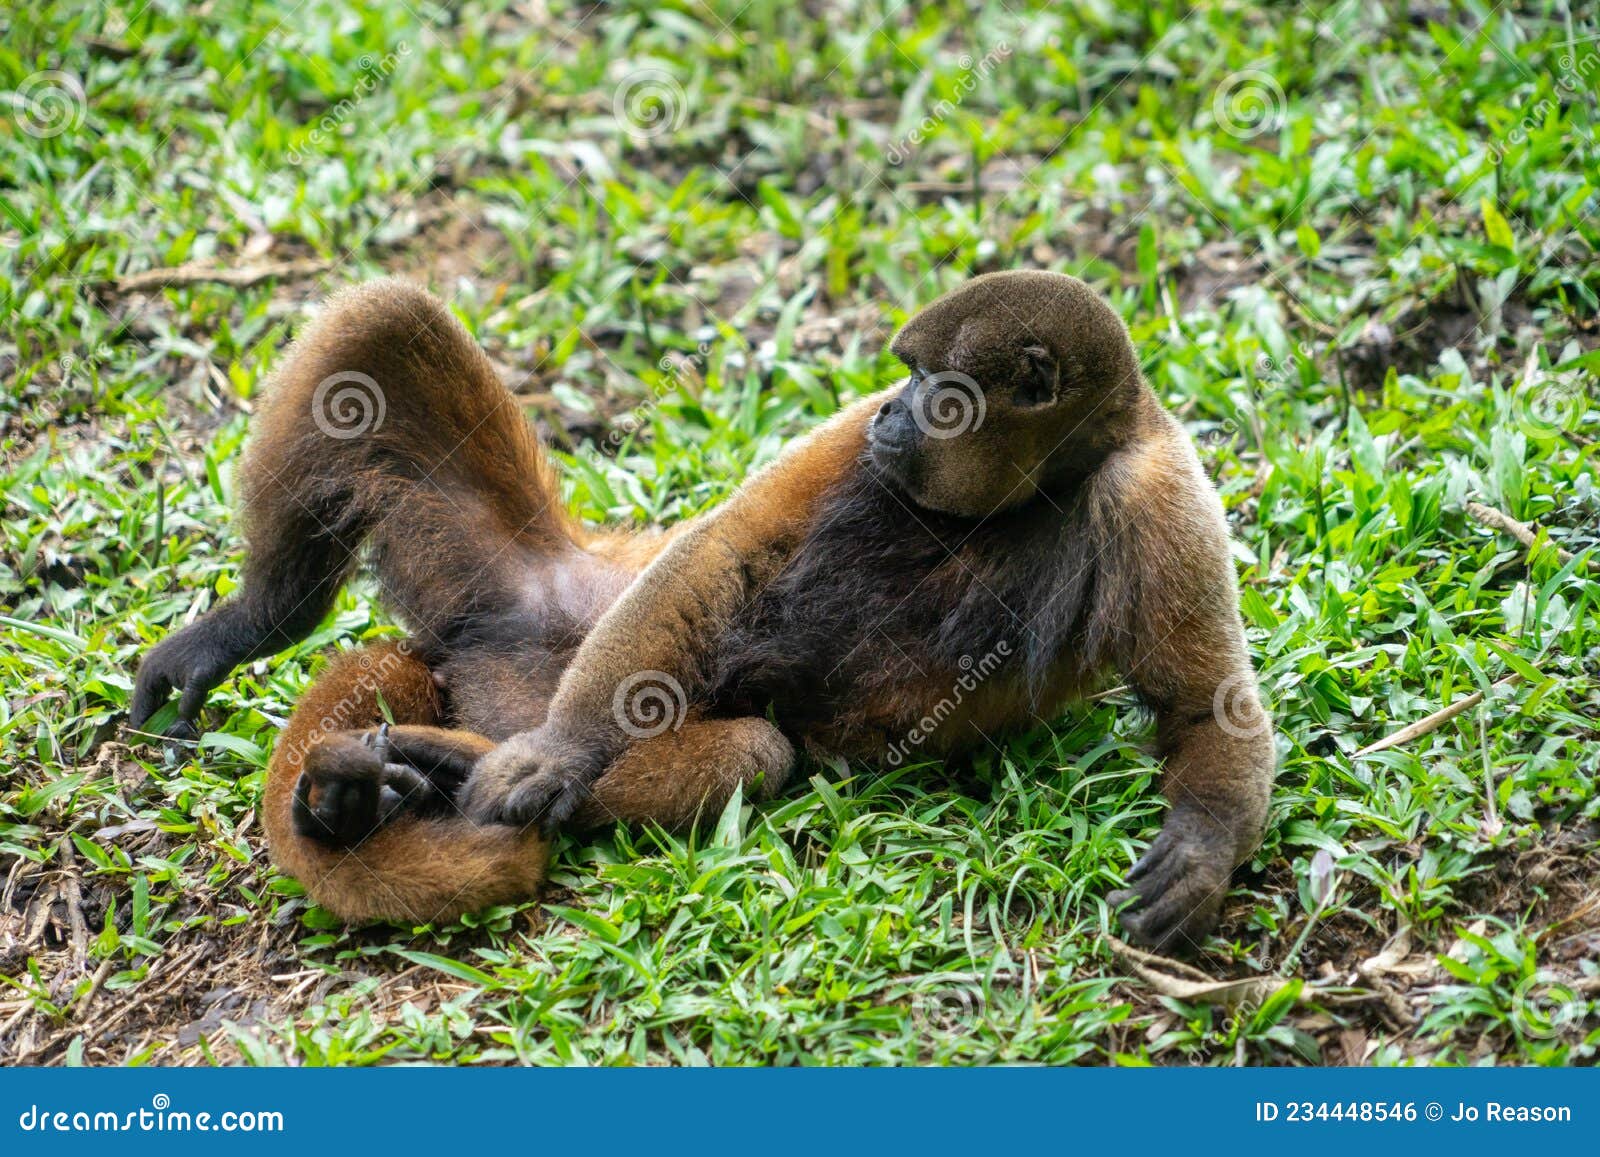 chorongo monkey, amazonia, ecuador